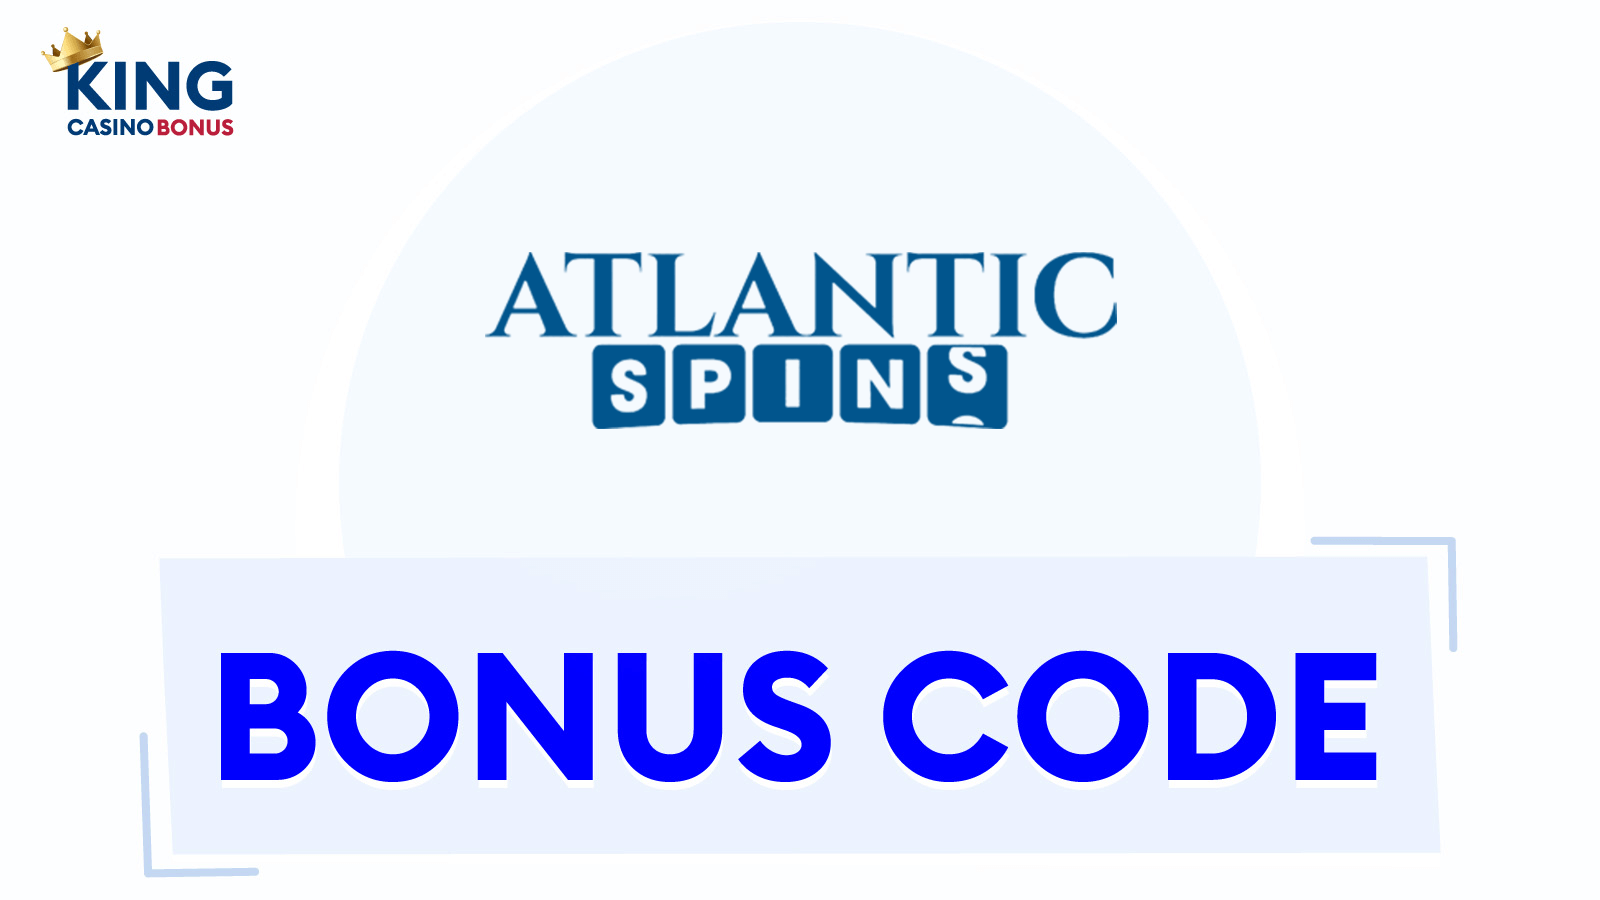 Atlantic Spins Bonus Codes